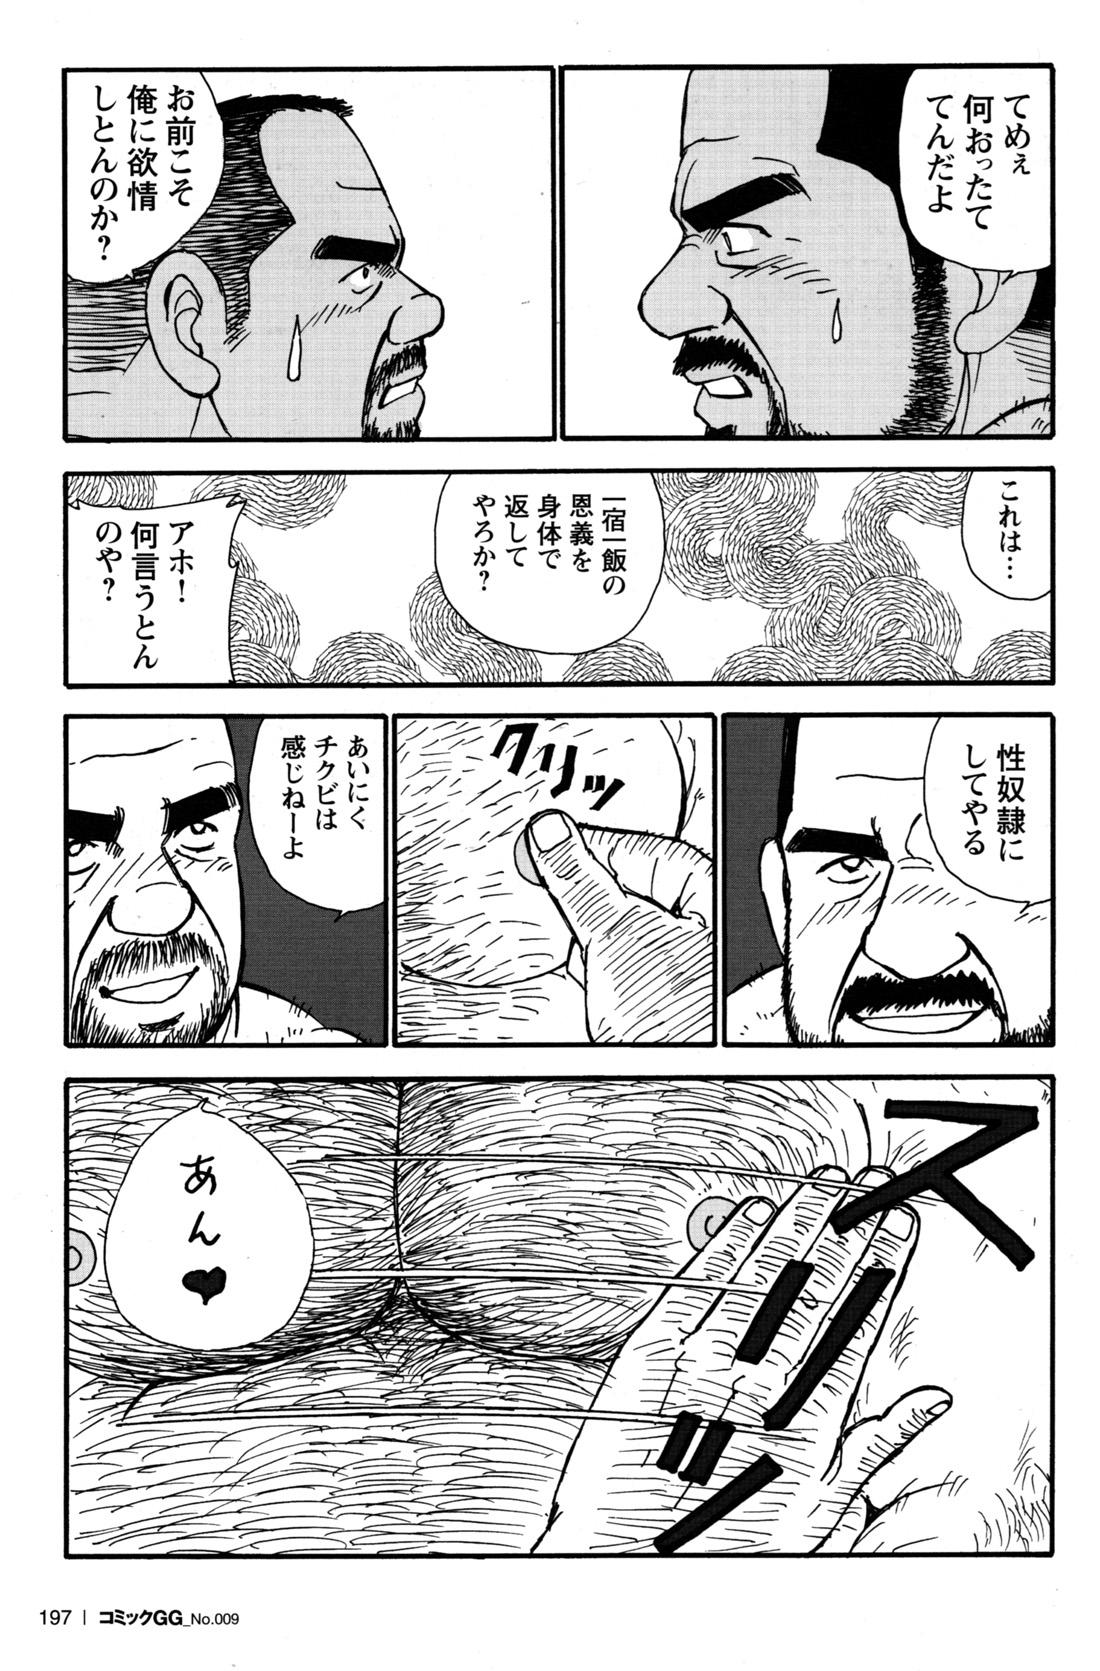 Comic G-men Gaho No.09 Gacchibi Zeme 179